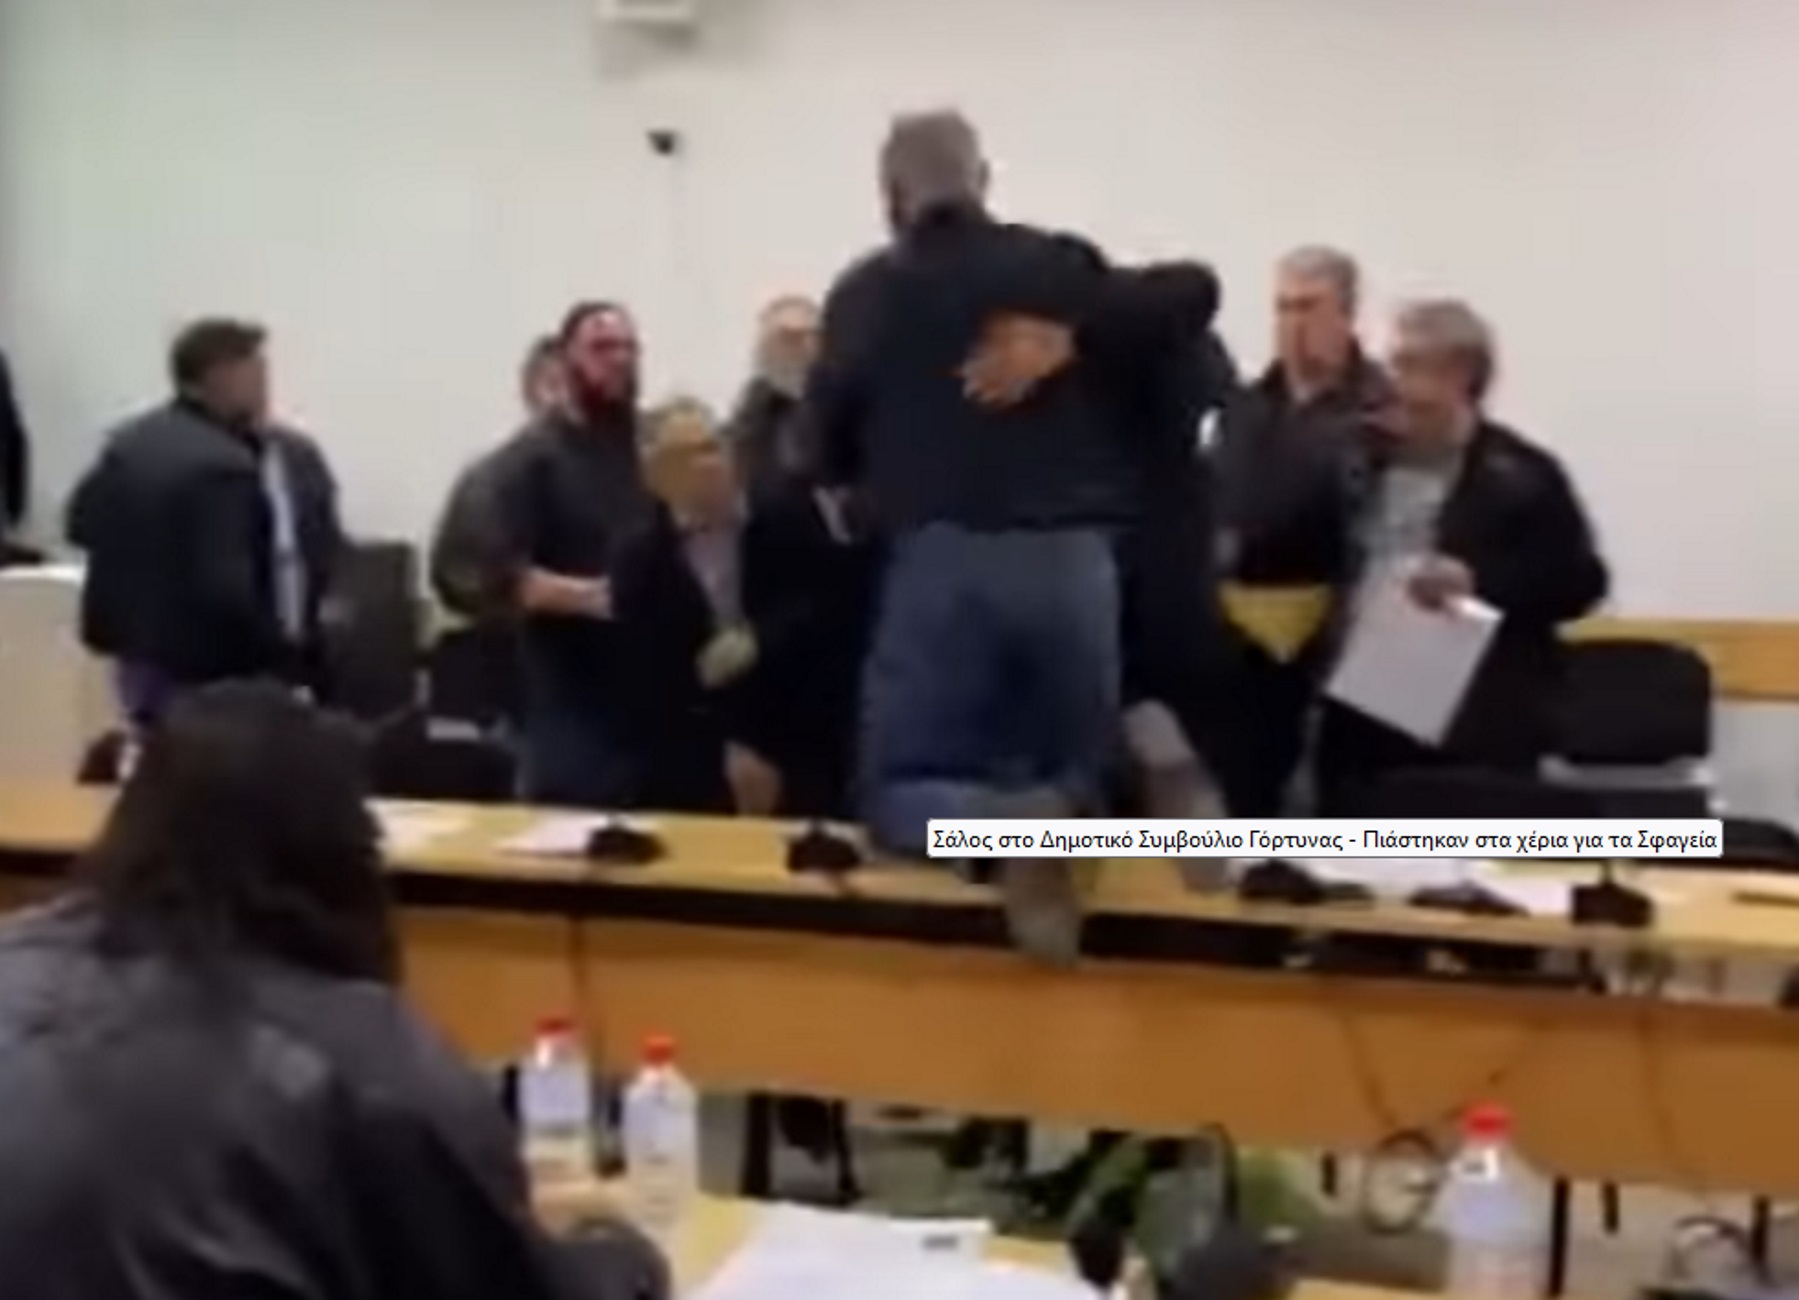 Κρήτη: Ξύλο και εικόνες ντροπής στο δημοτικό συμβούλιο Γόρτυνας – Δείτε το βίντεο του επεισοδίου